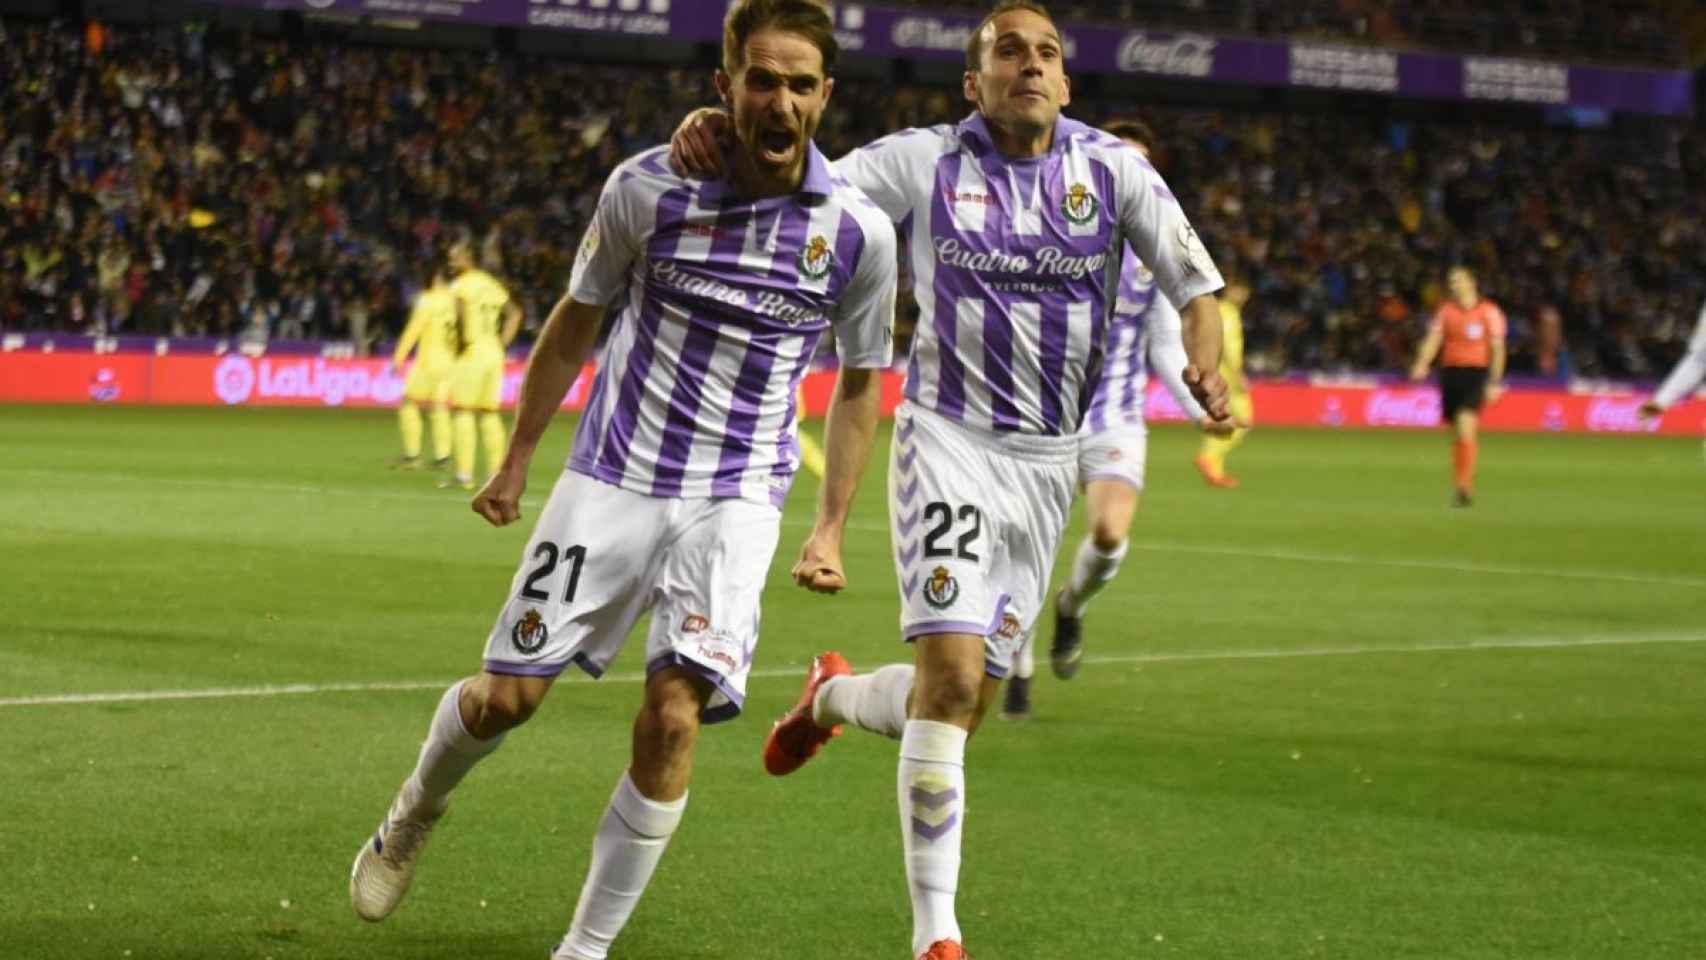 Los jugadores del Valladolid celebran un gol al Girona. Foto: Twitter (@realvalladolid)